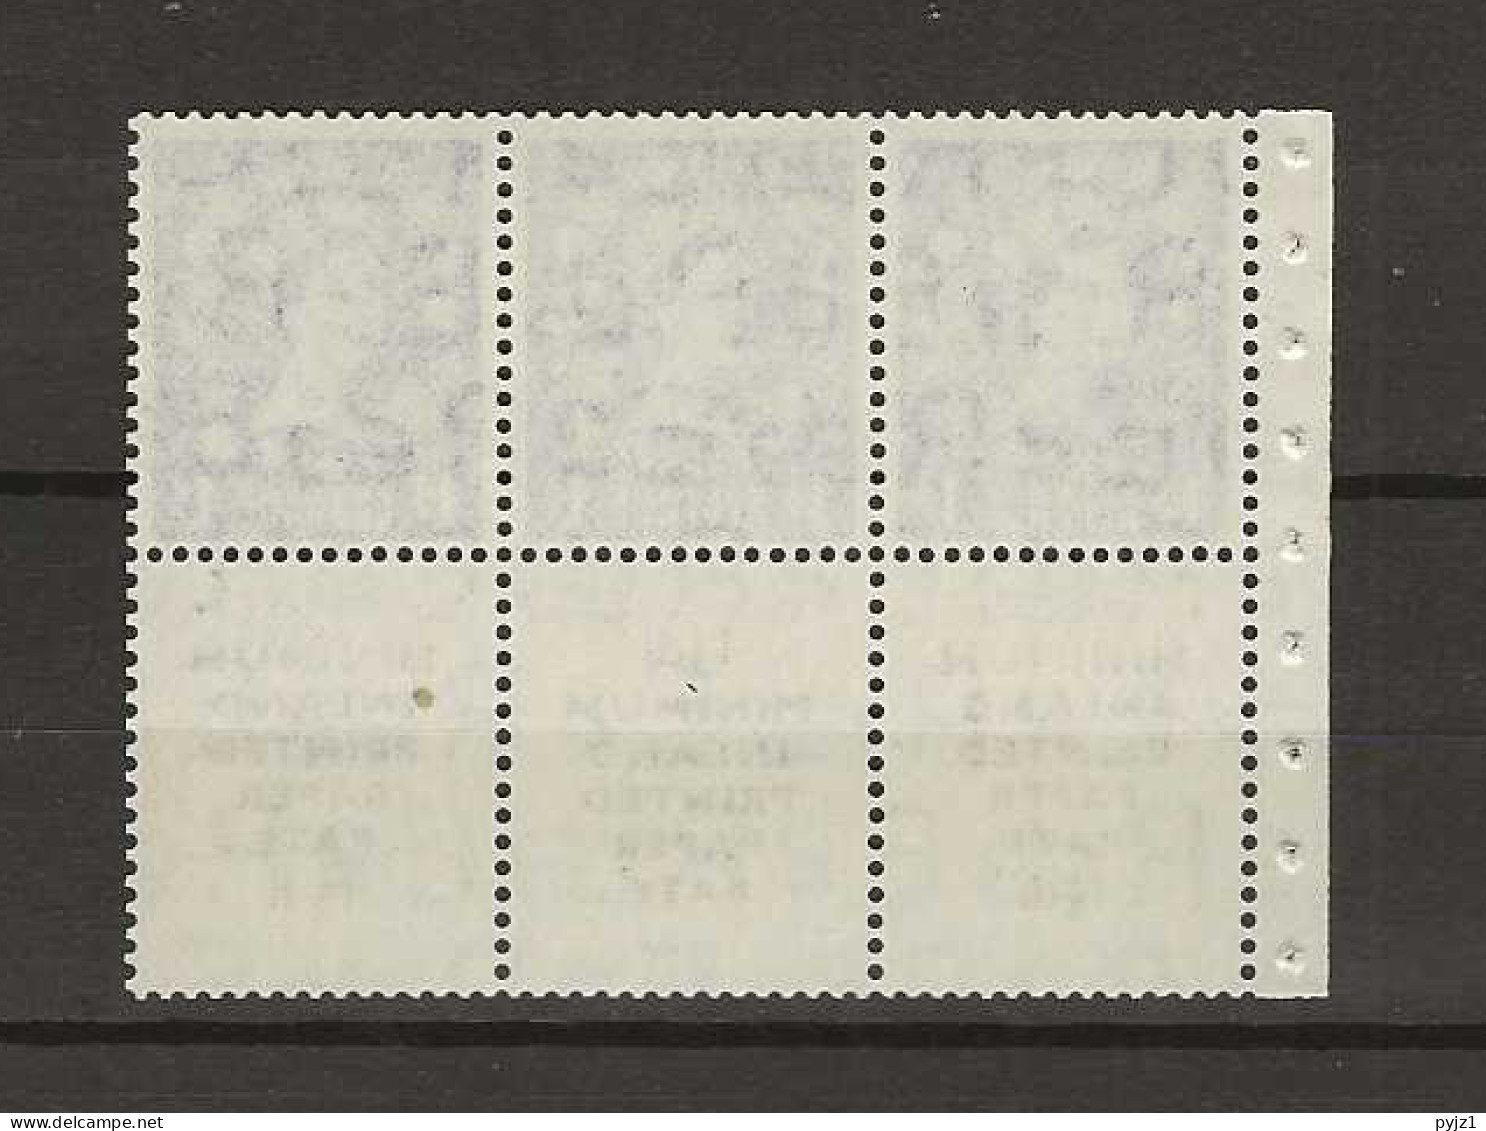 1952 MNH GB Wmk Tudor Crown Booklet Pane SG 516-la RARE Text "minimum Inland..." - Unused Stamps